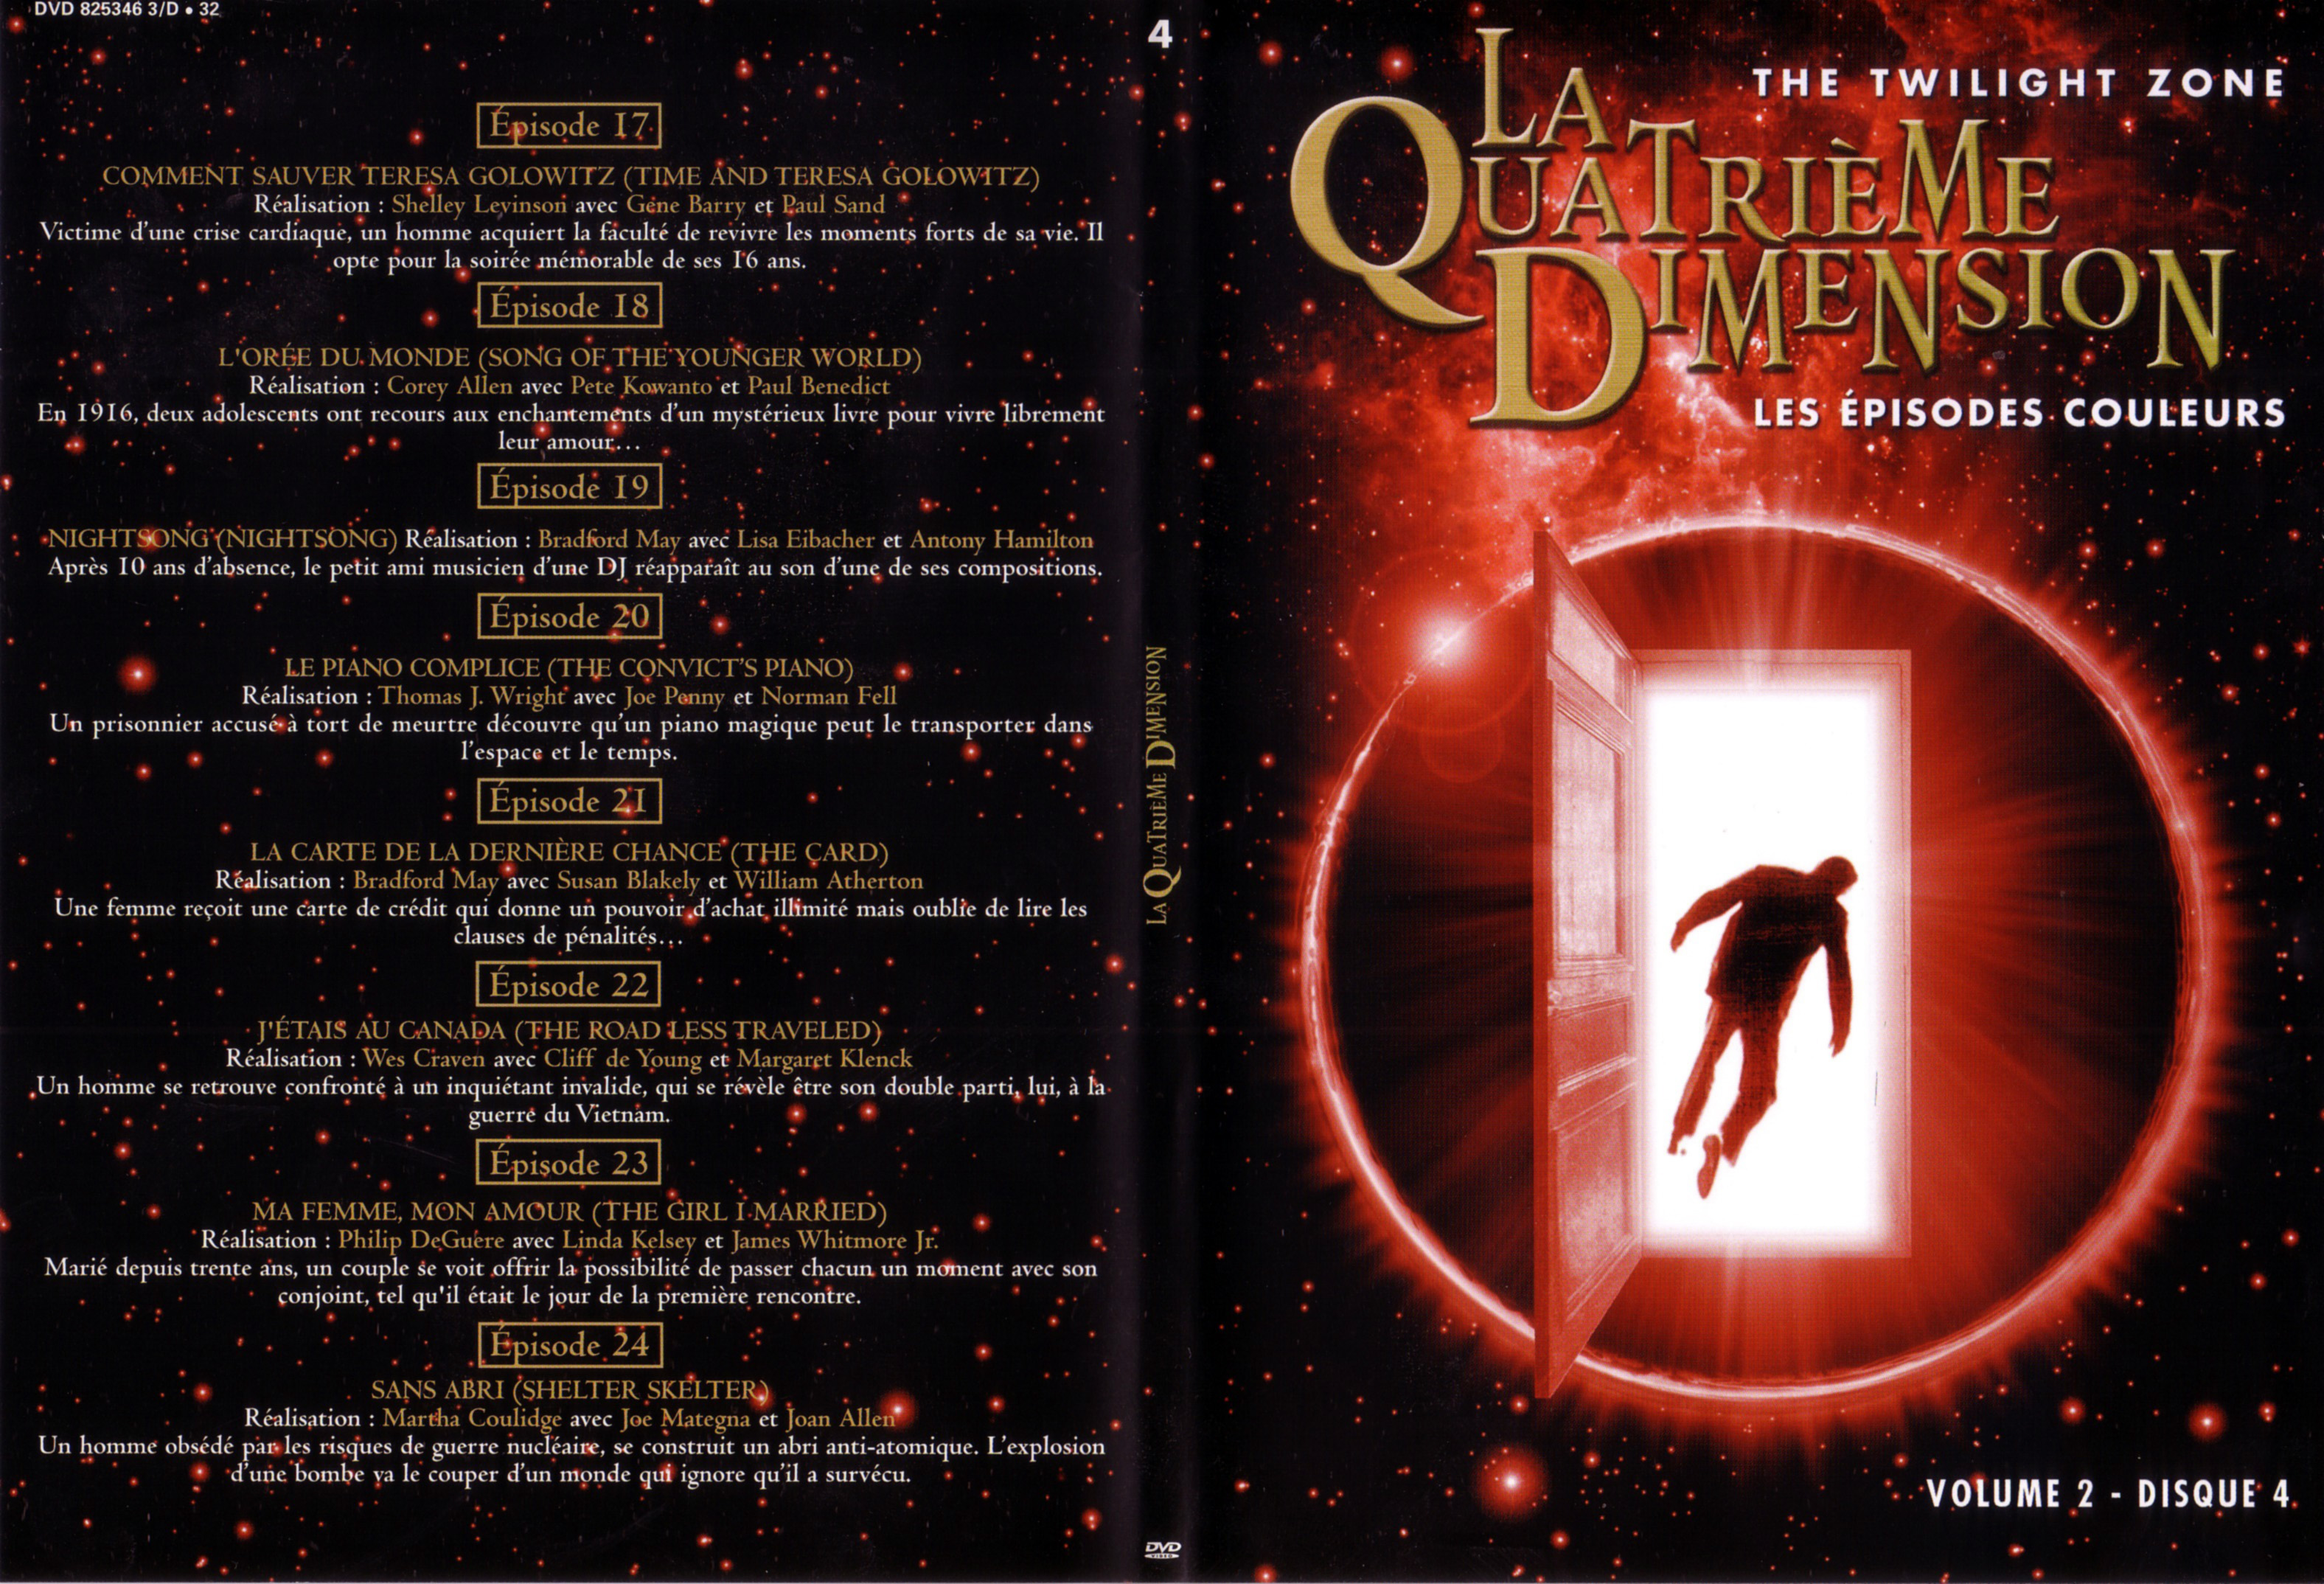 Jaquette DVD La quatrime dimension - Episodes couleurs vol 2 DVD 4